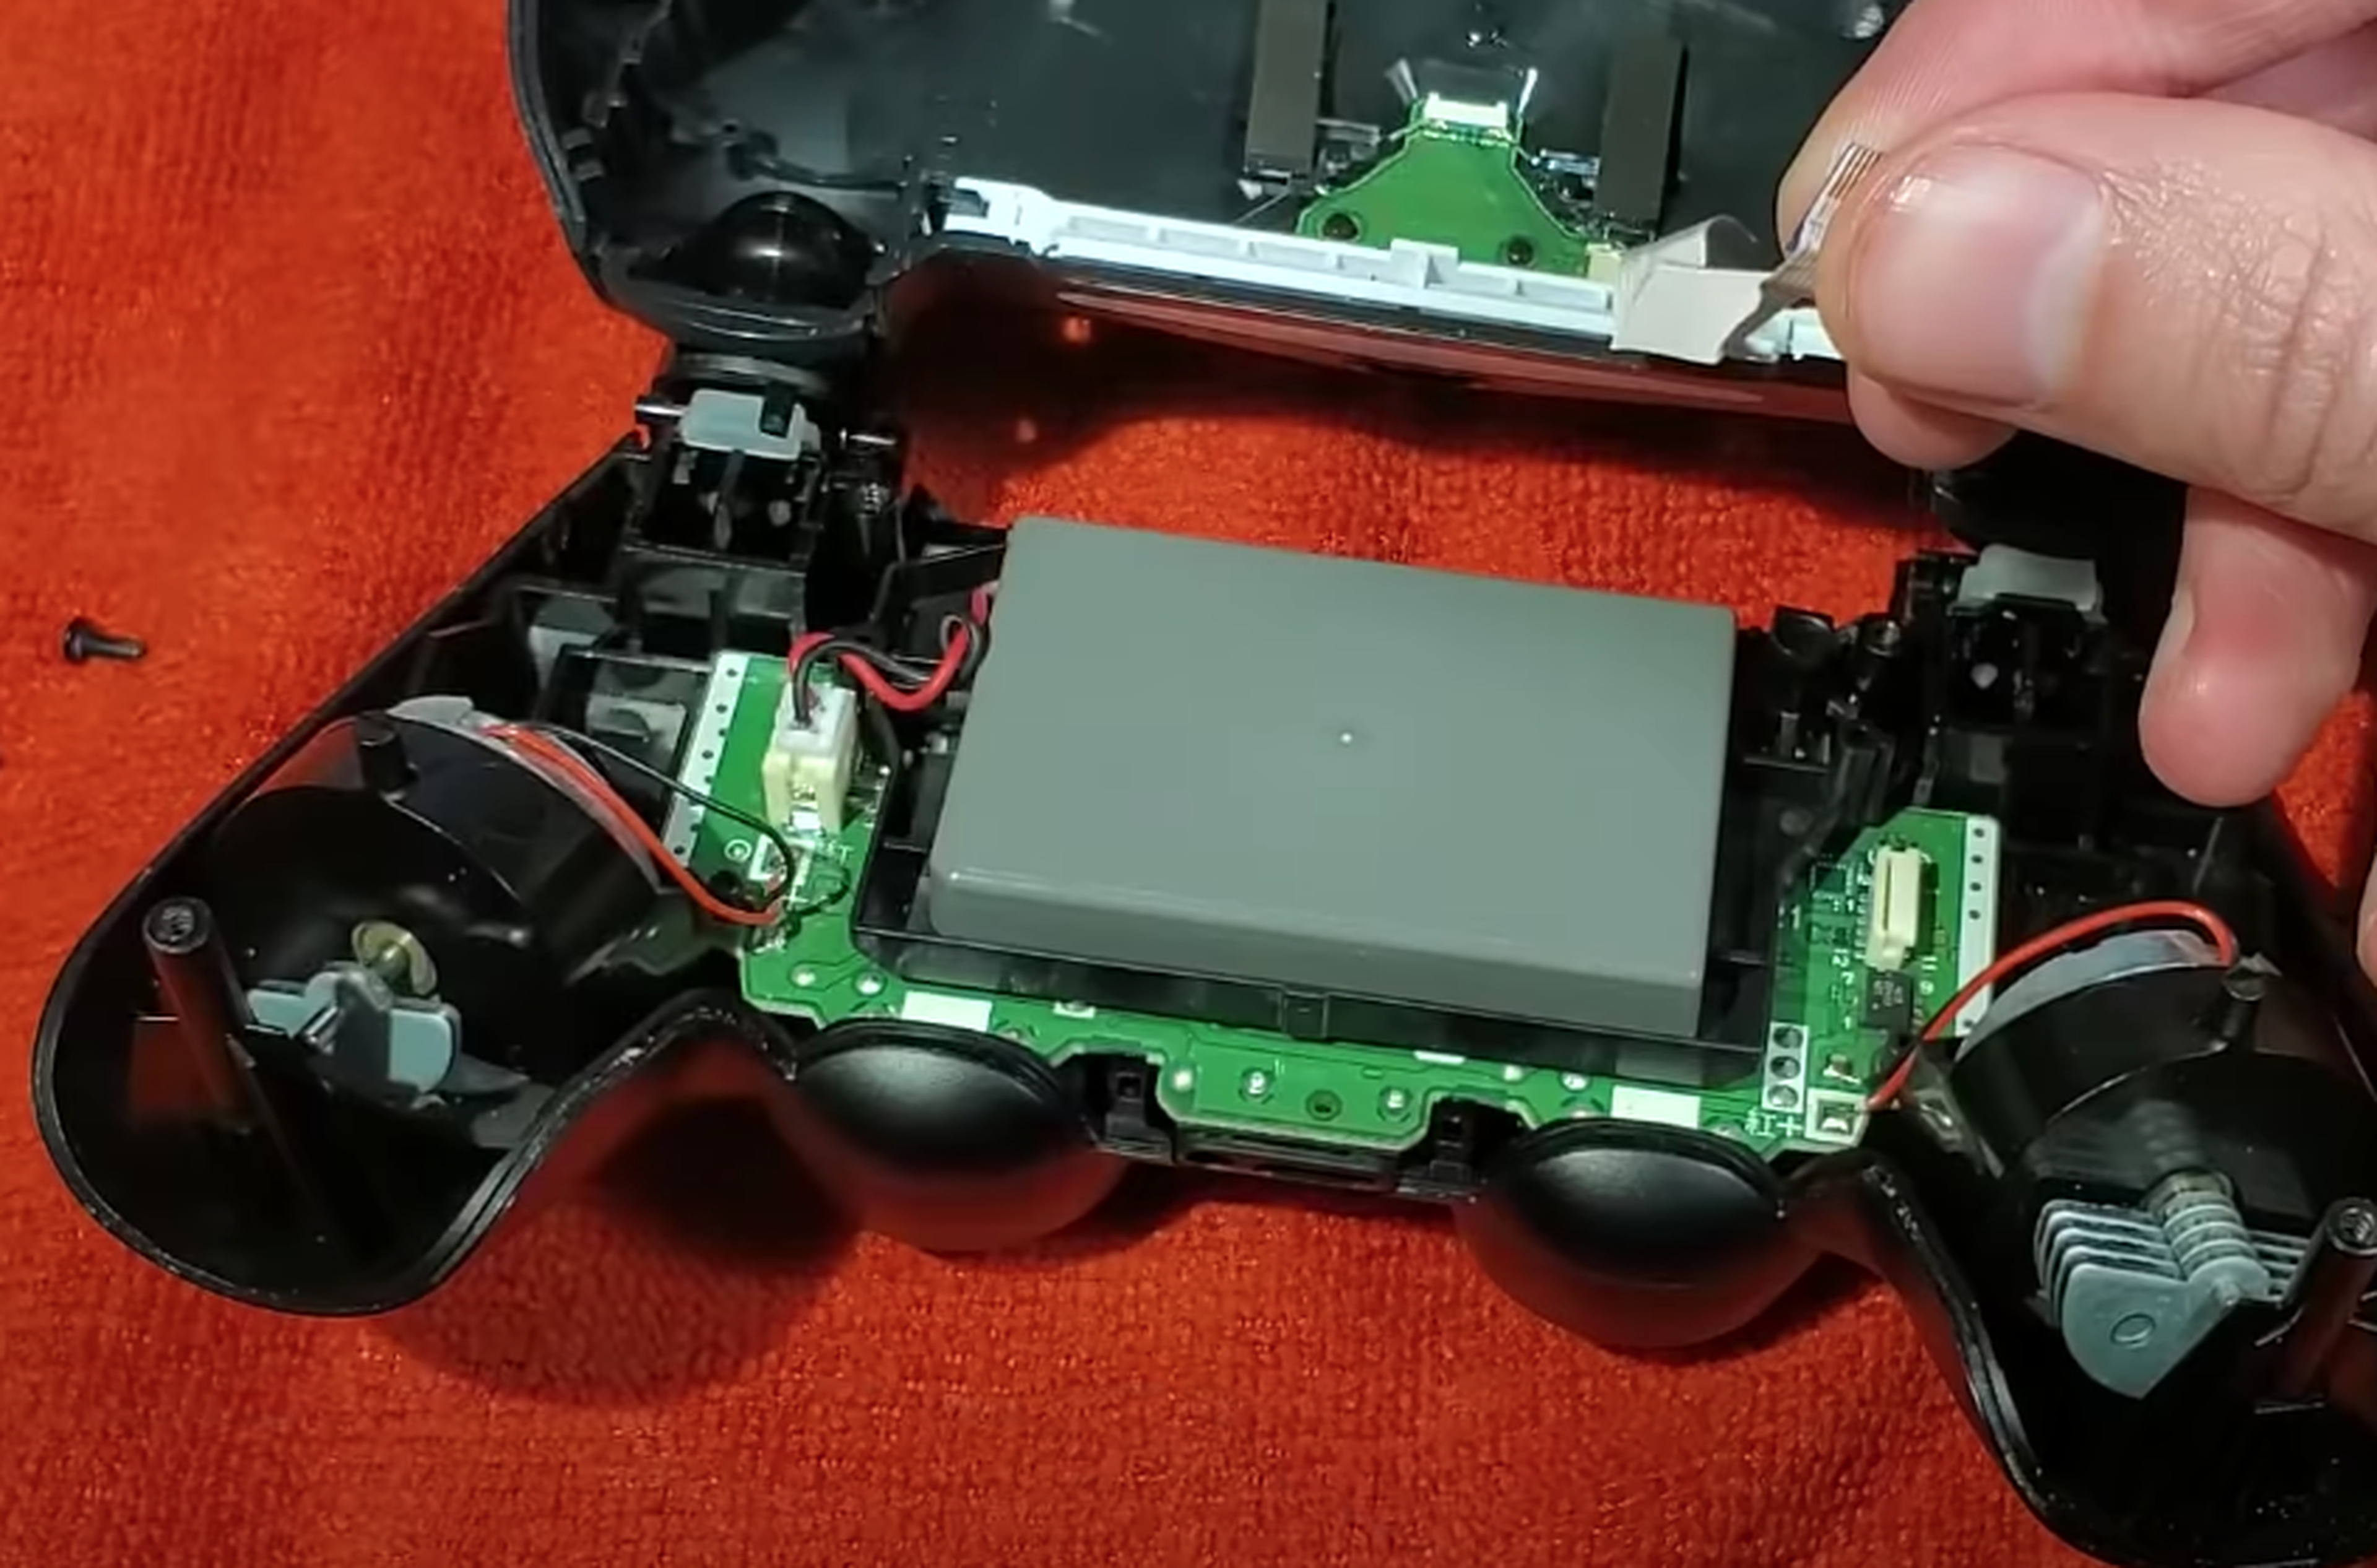 Batería mando PS4 conector pequeño